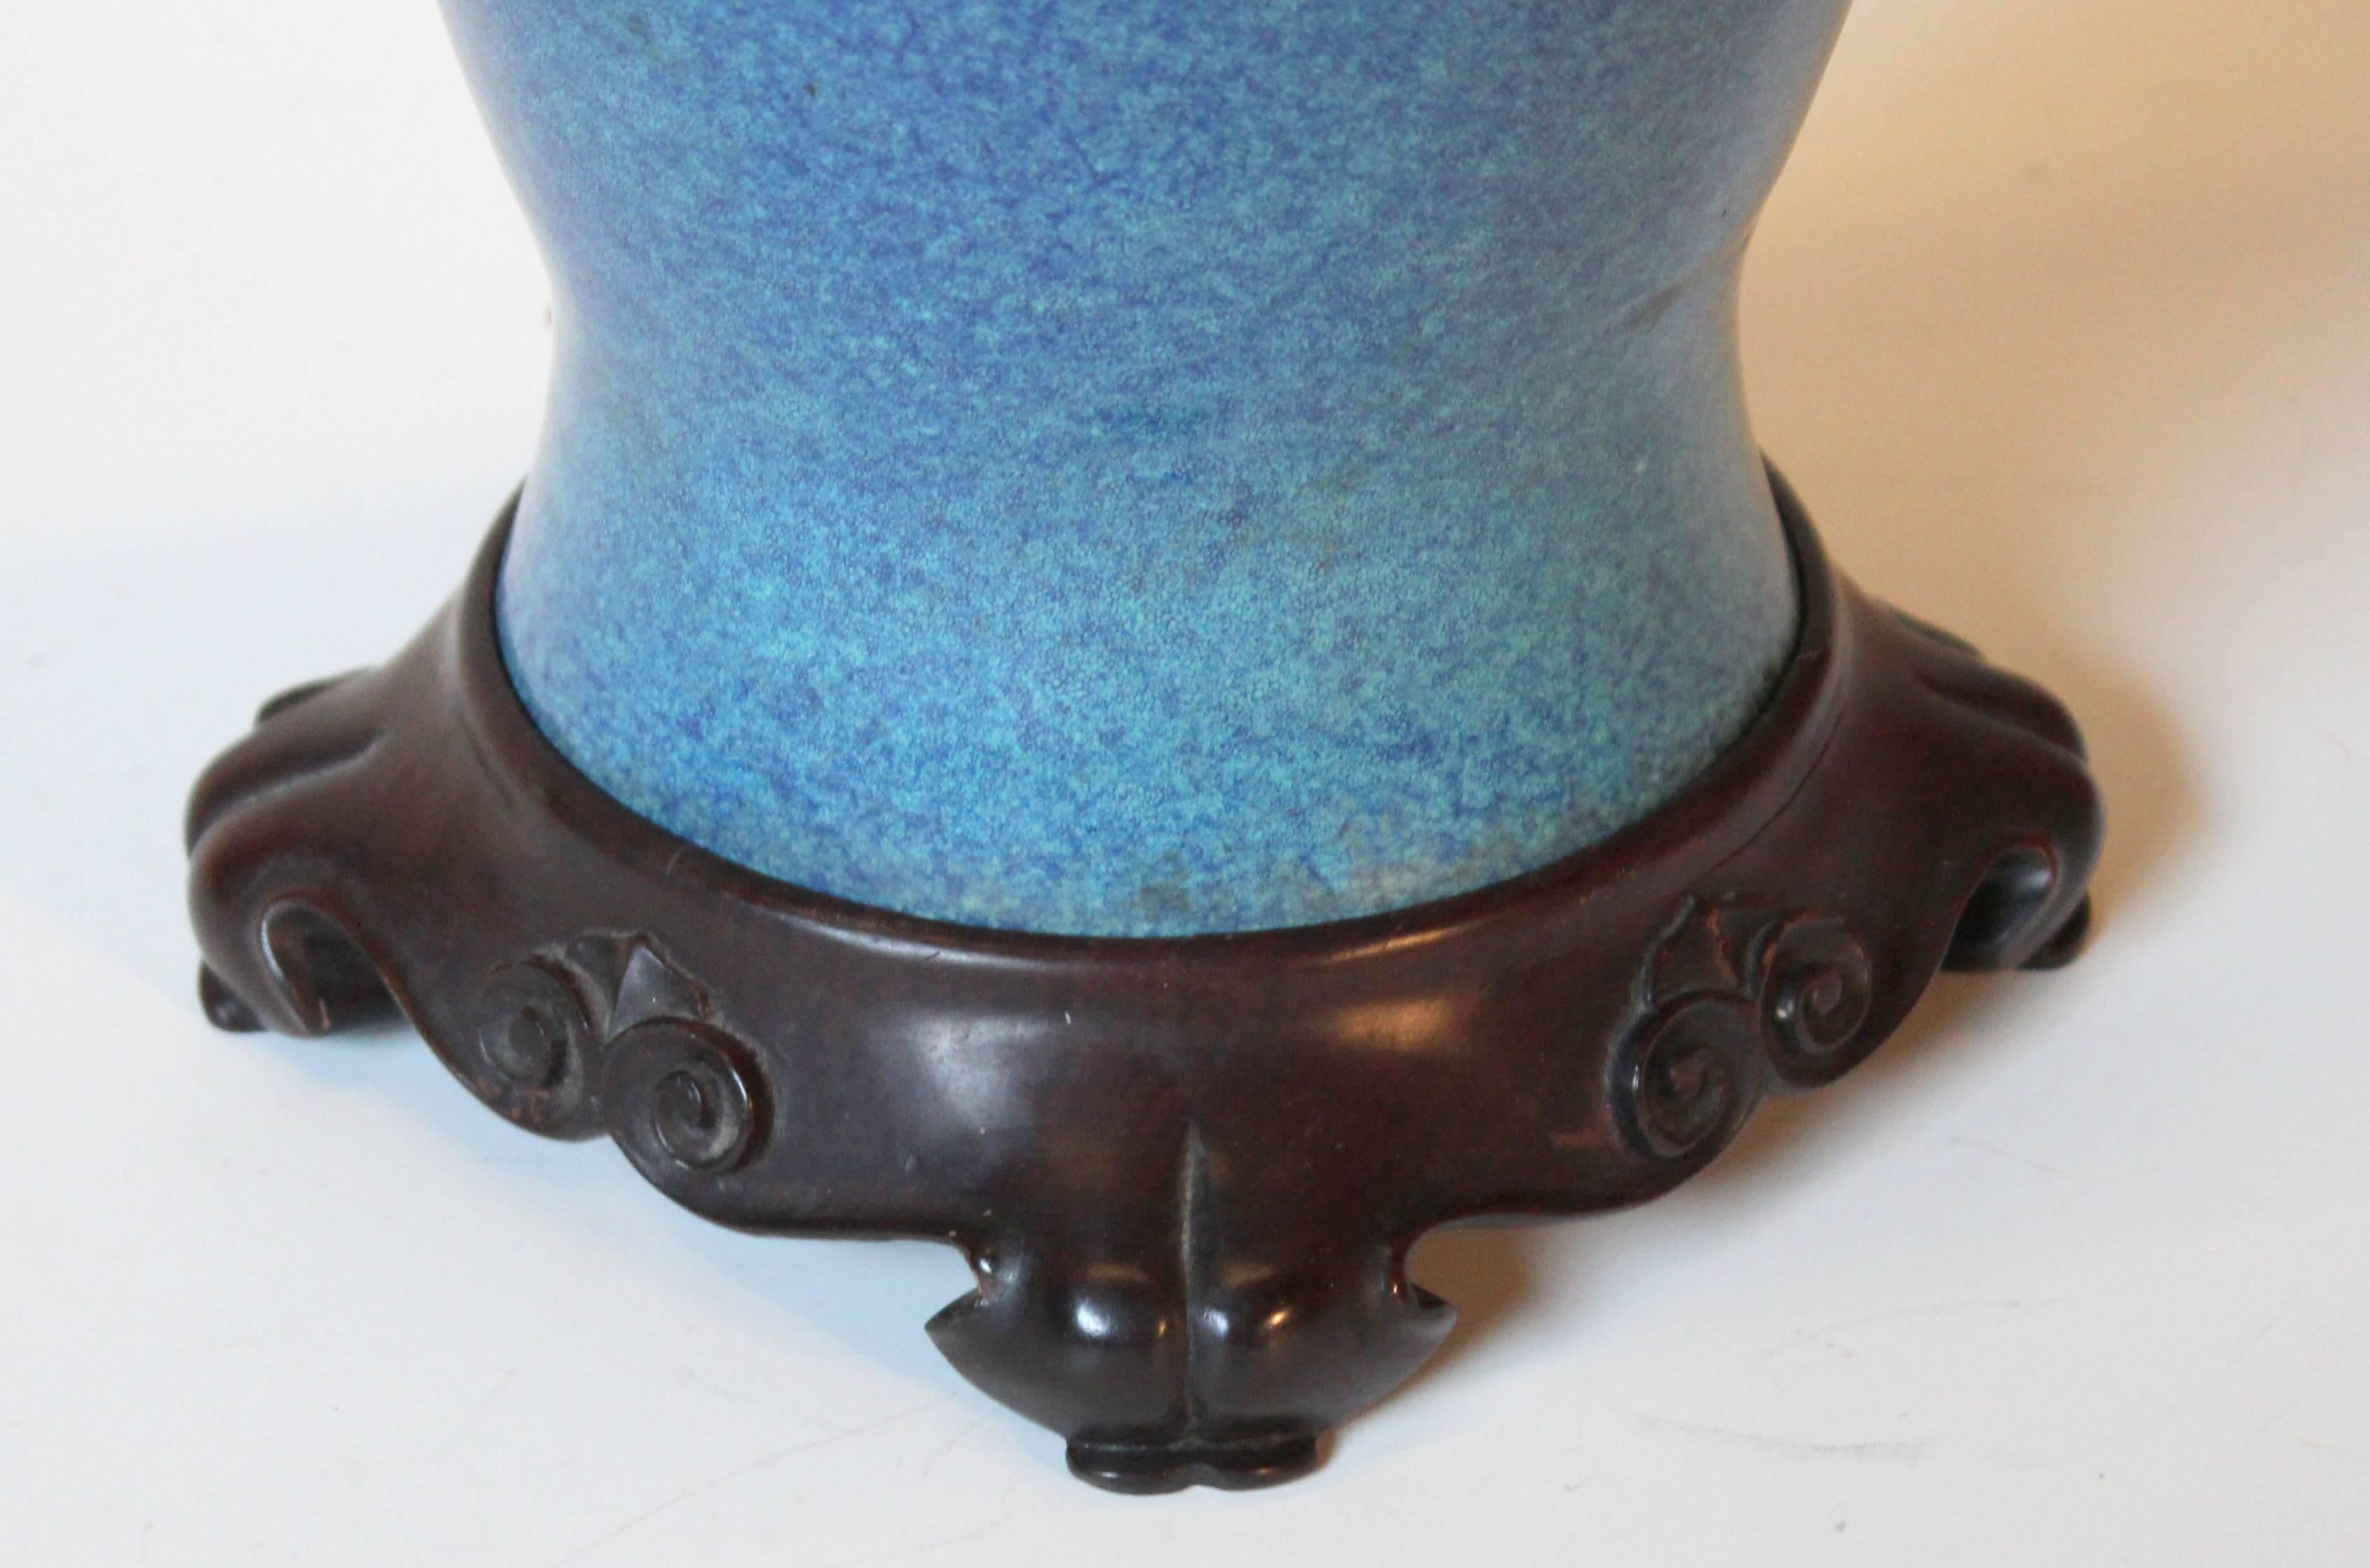 Antique Chinese Porcelain Robin's Egg Blue Vase Lamp Carved Base Bronze Hardware 1